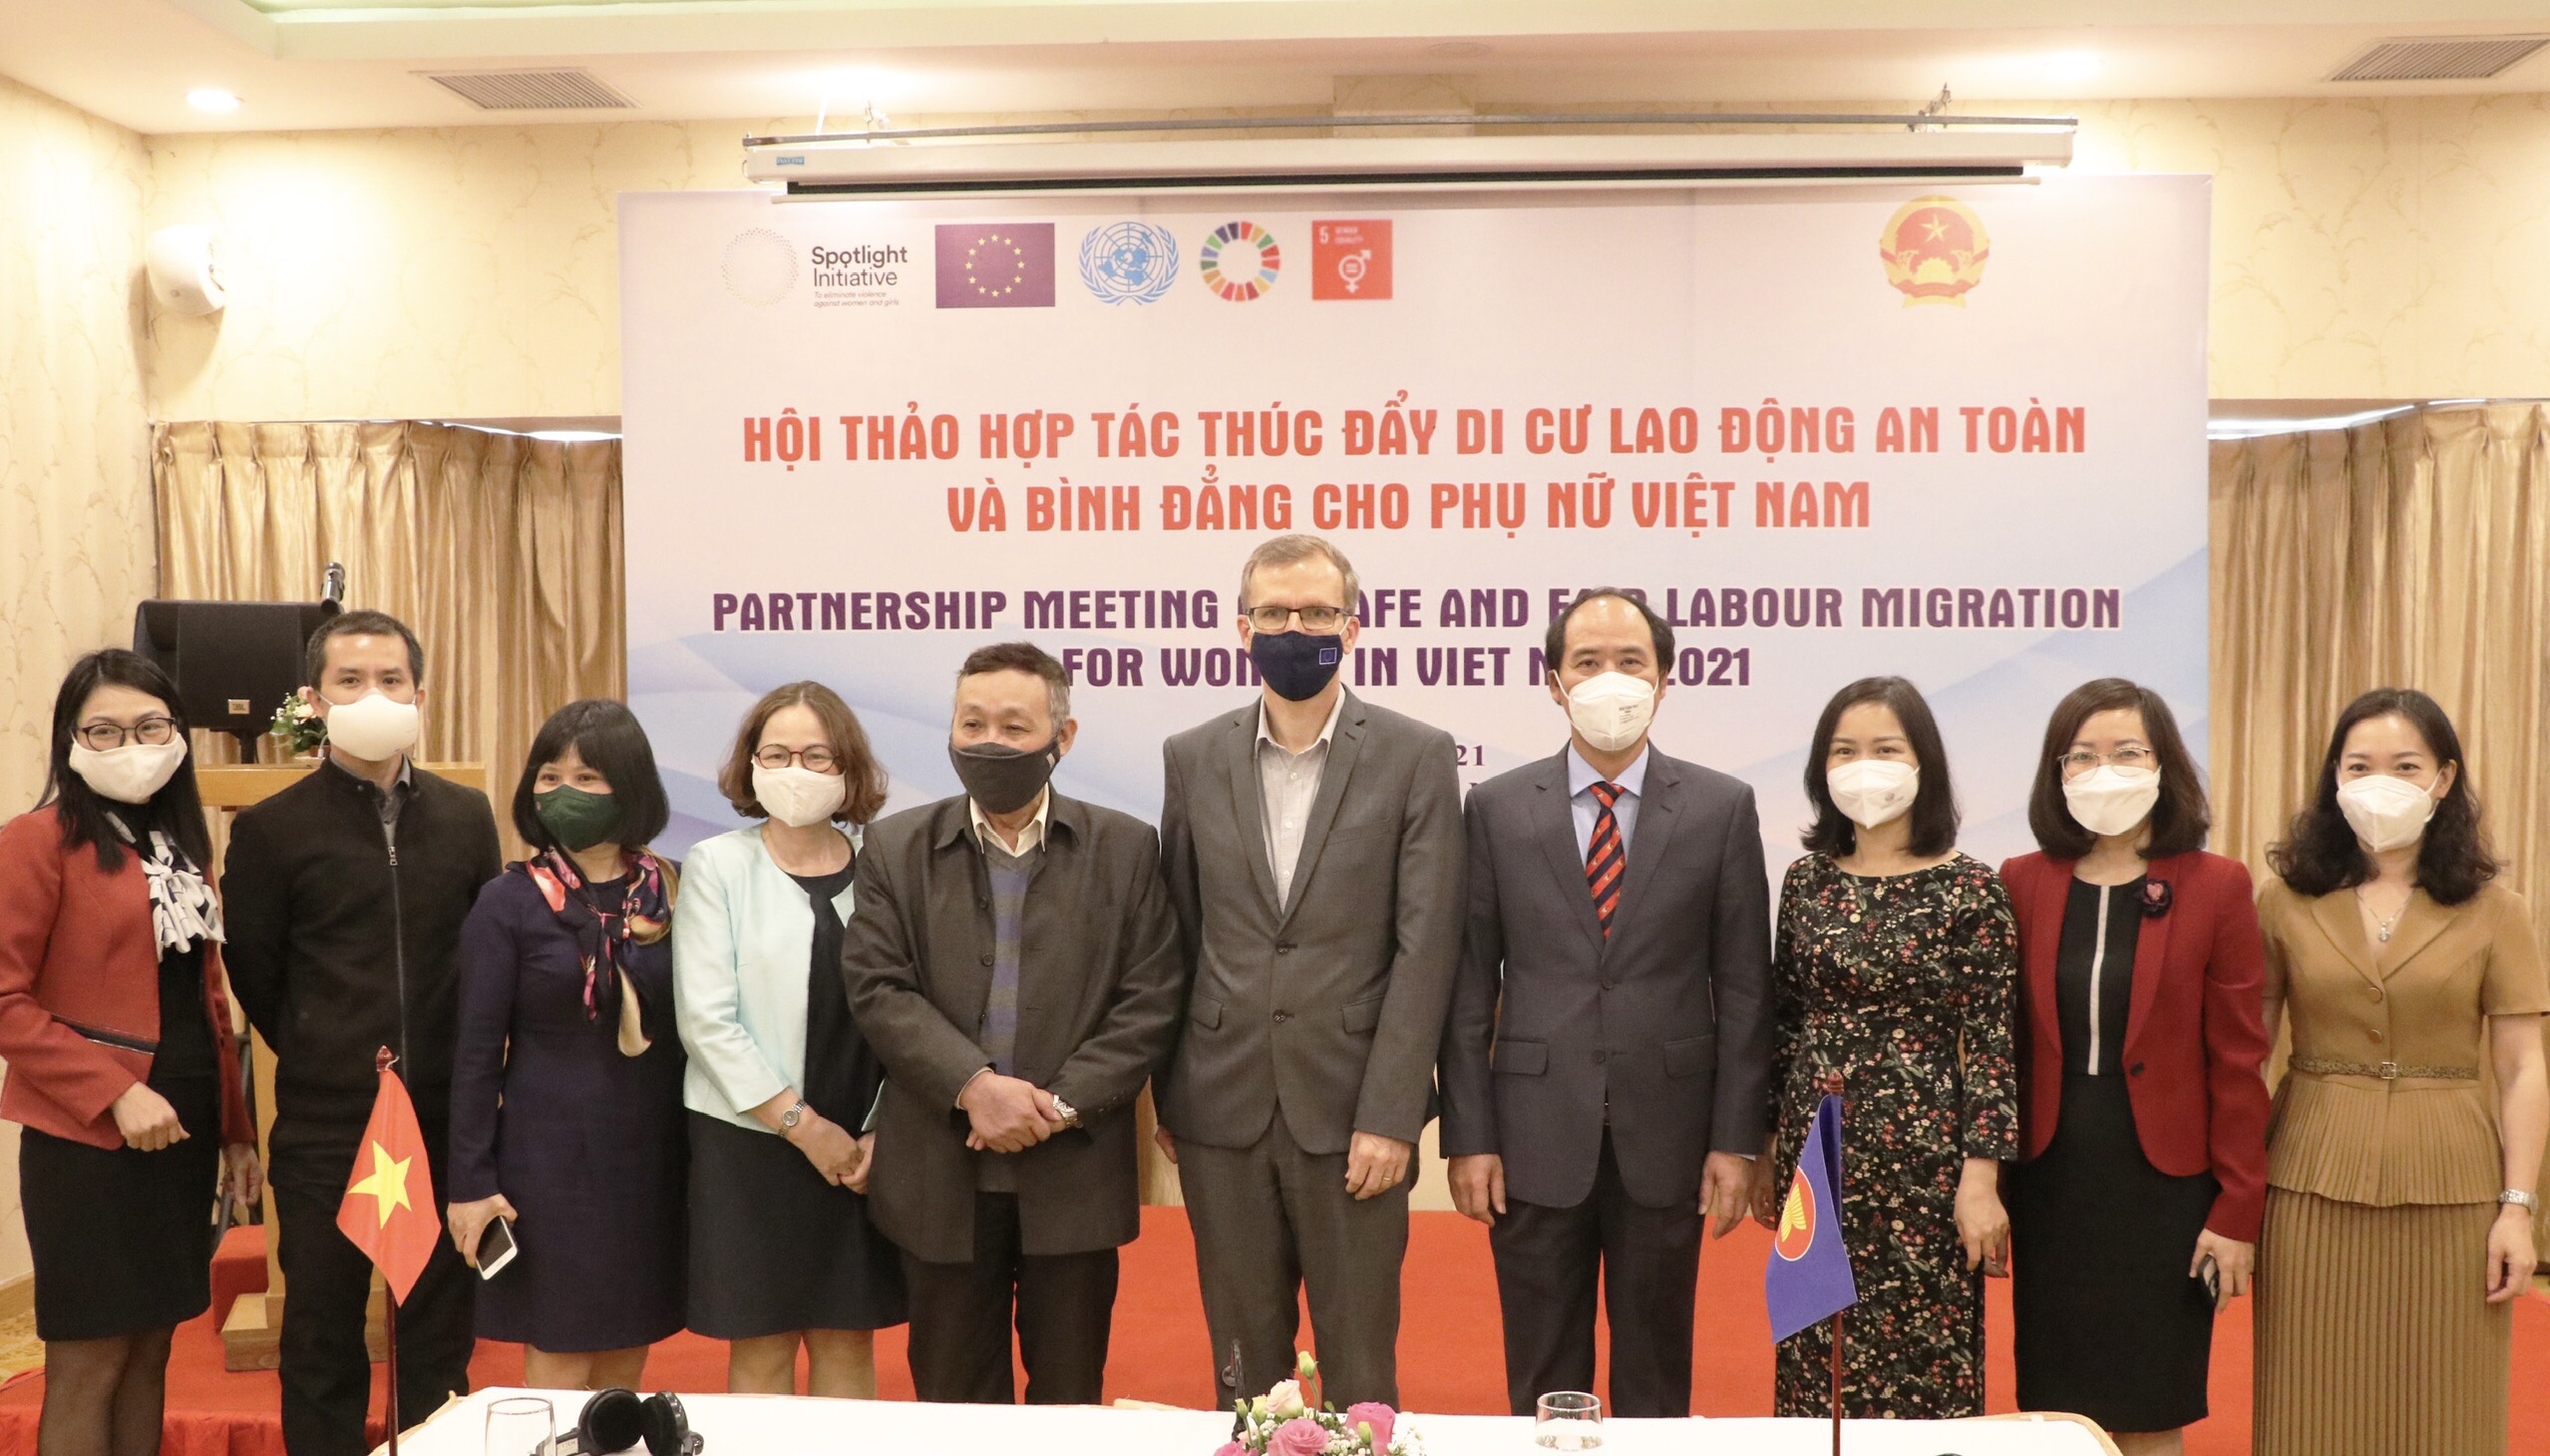 Thúc đẩy di cư lao động an toàn và bình đẳng cho phụ nữ Việt Nam